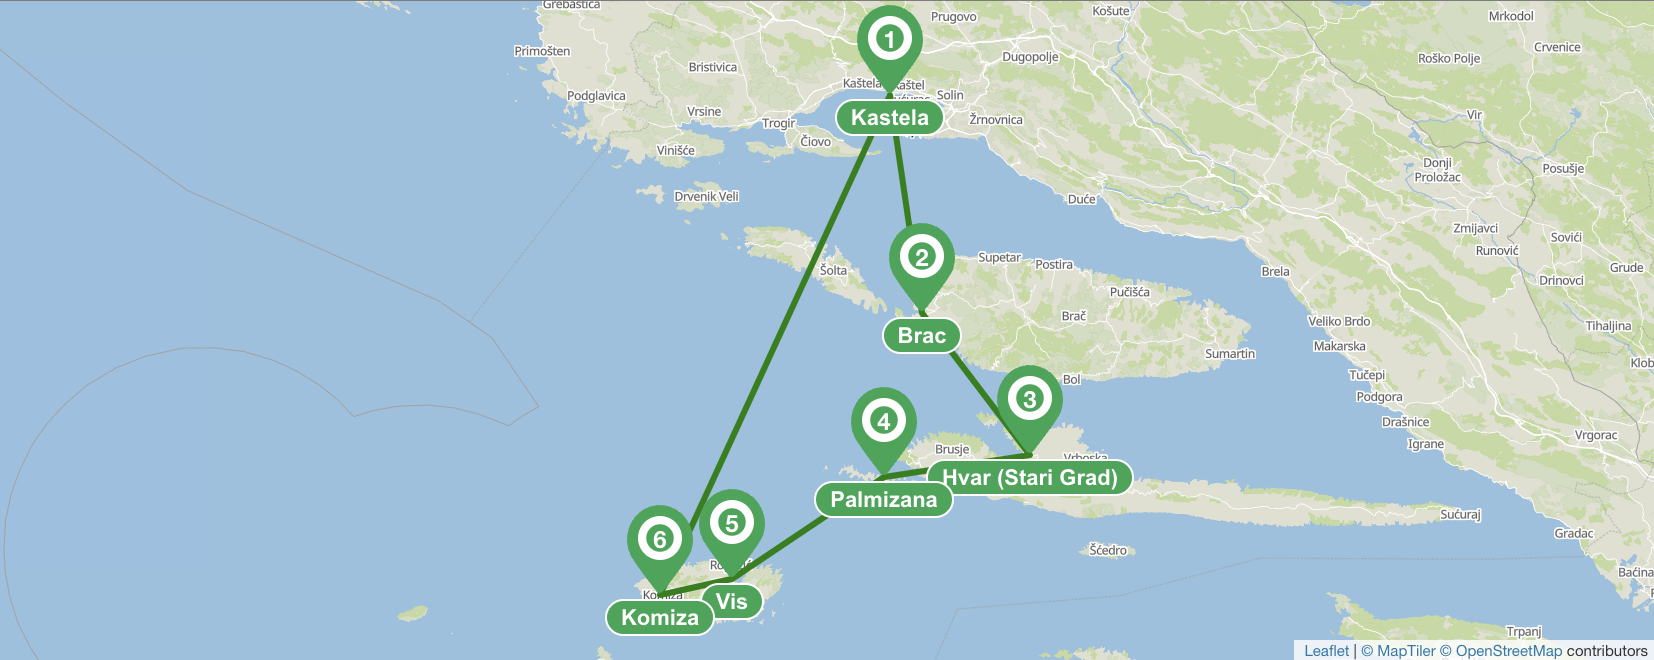 Itinerario di navigazione verso sud a Spalato - 7 giorni